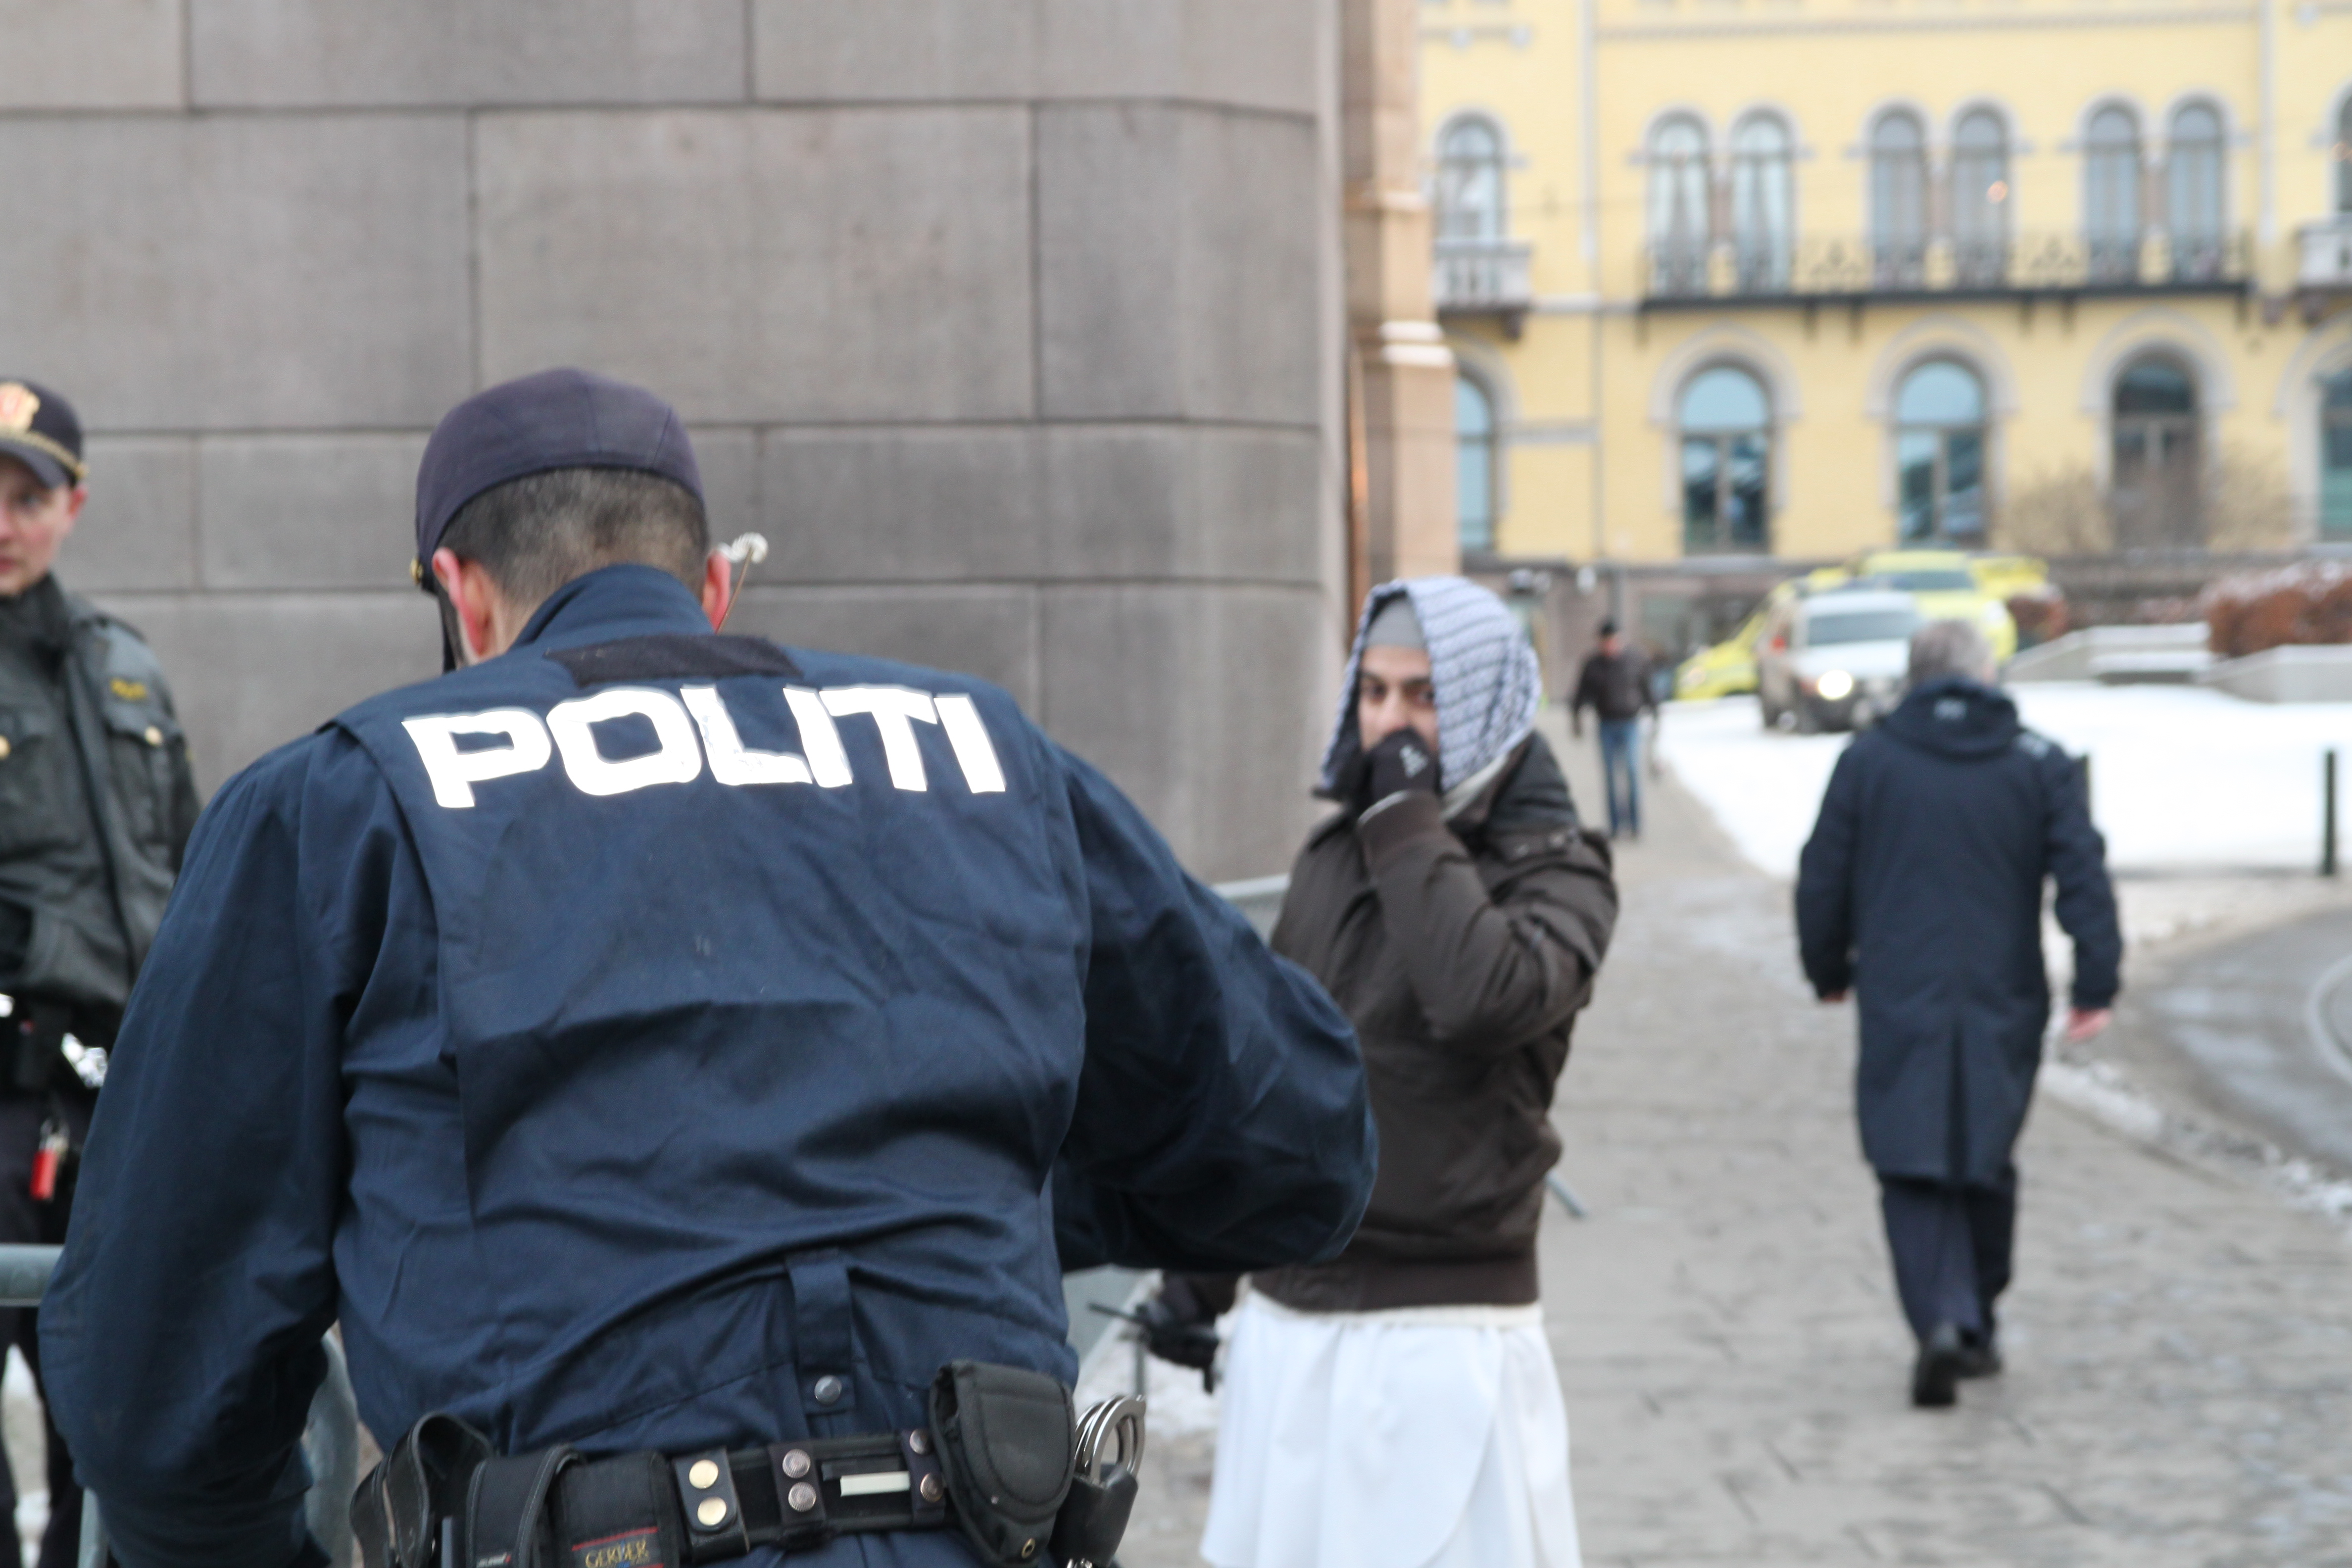 Vi kan forvente oss at politi stadig oftere blir en del av vår hverdag. Her fra islamistdemonstrasjonen utenfor Stortinget i 2012. Foto: HRS